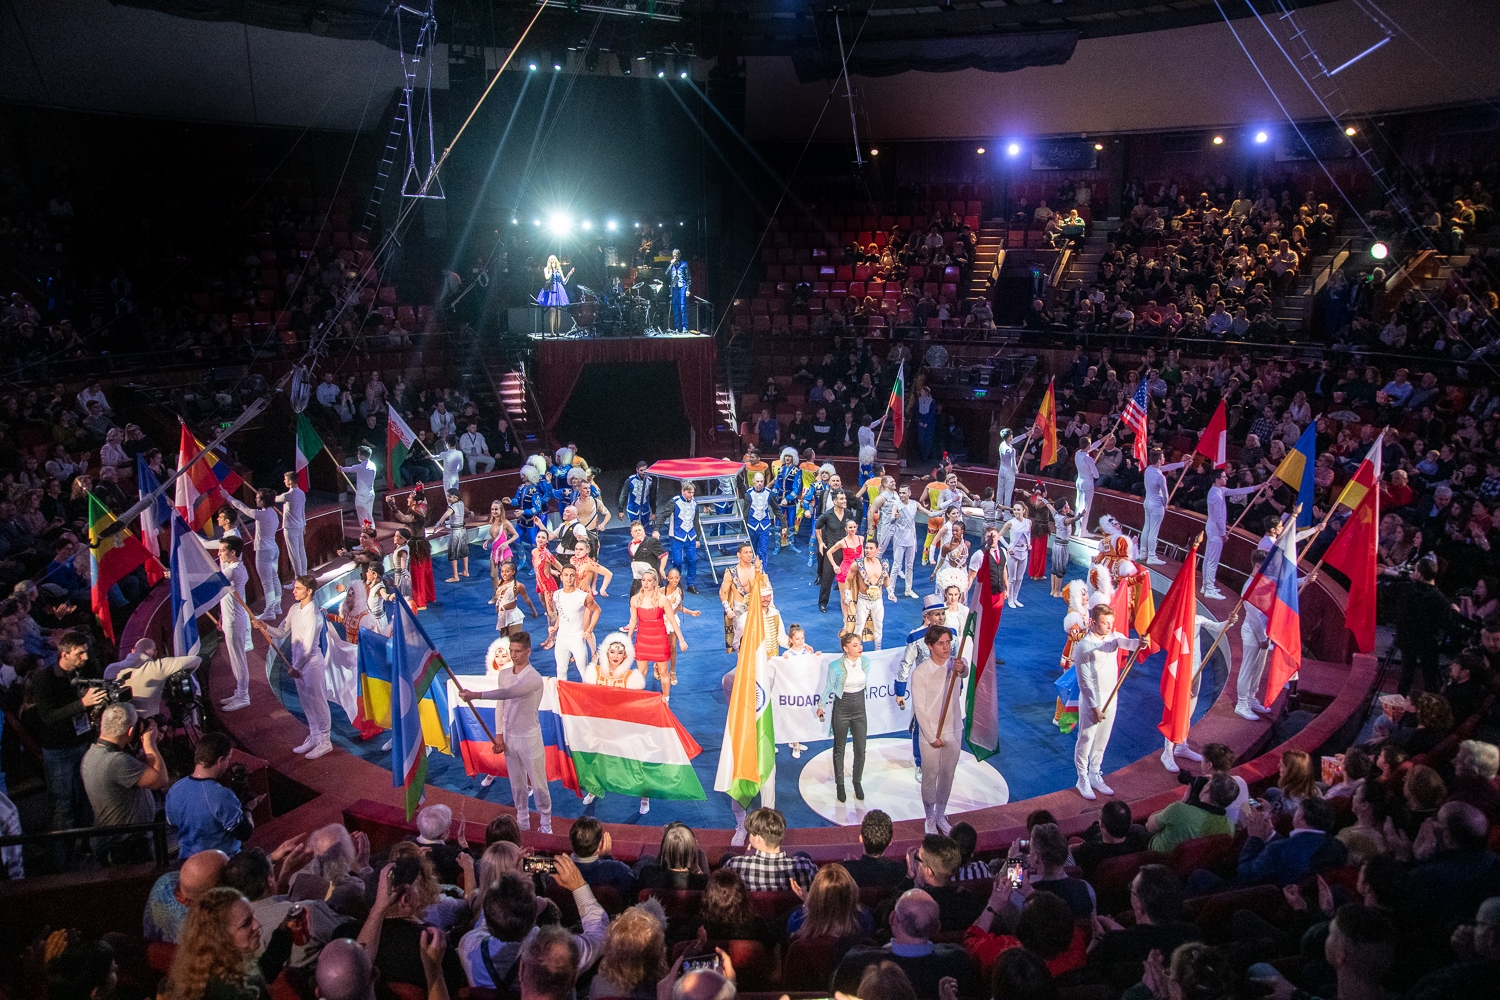 Elkezdődött a XIII. Budapest Nemzetközi Cirkuszfesztivál – Beszámoló az „A” versenyprogramról